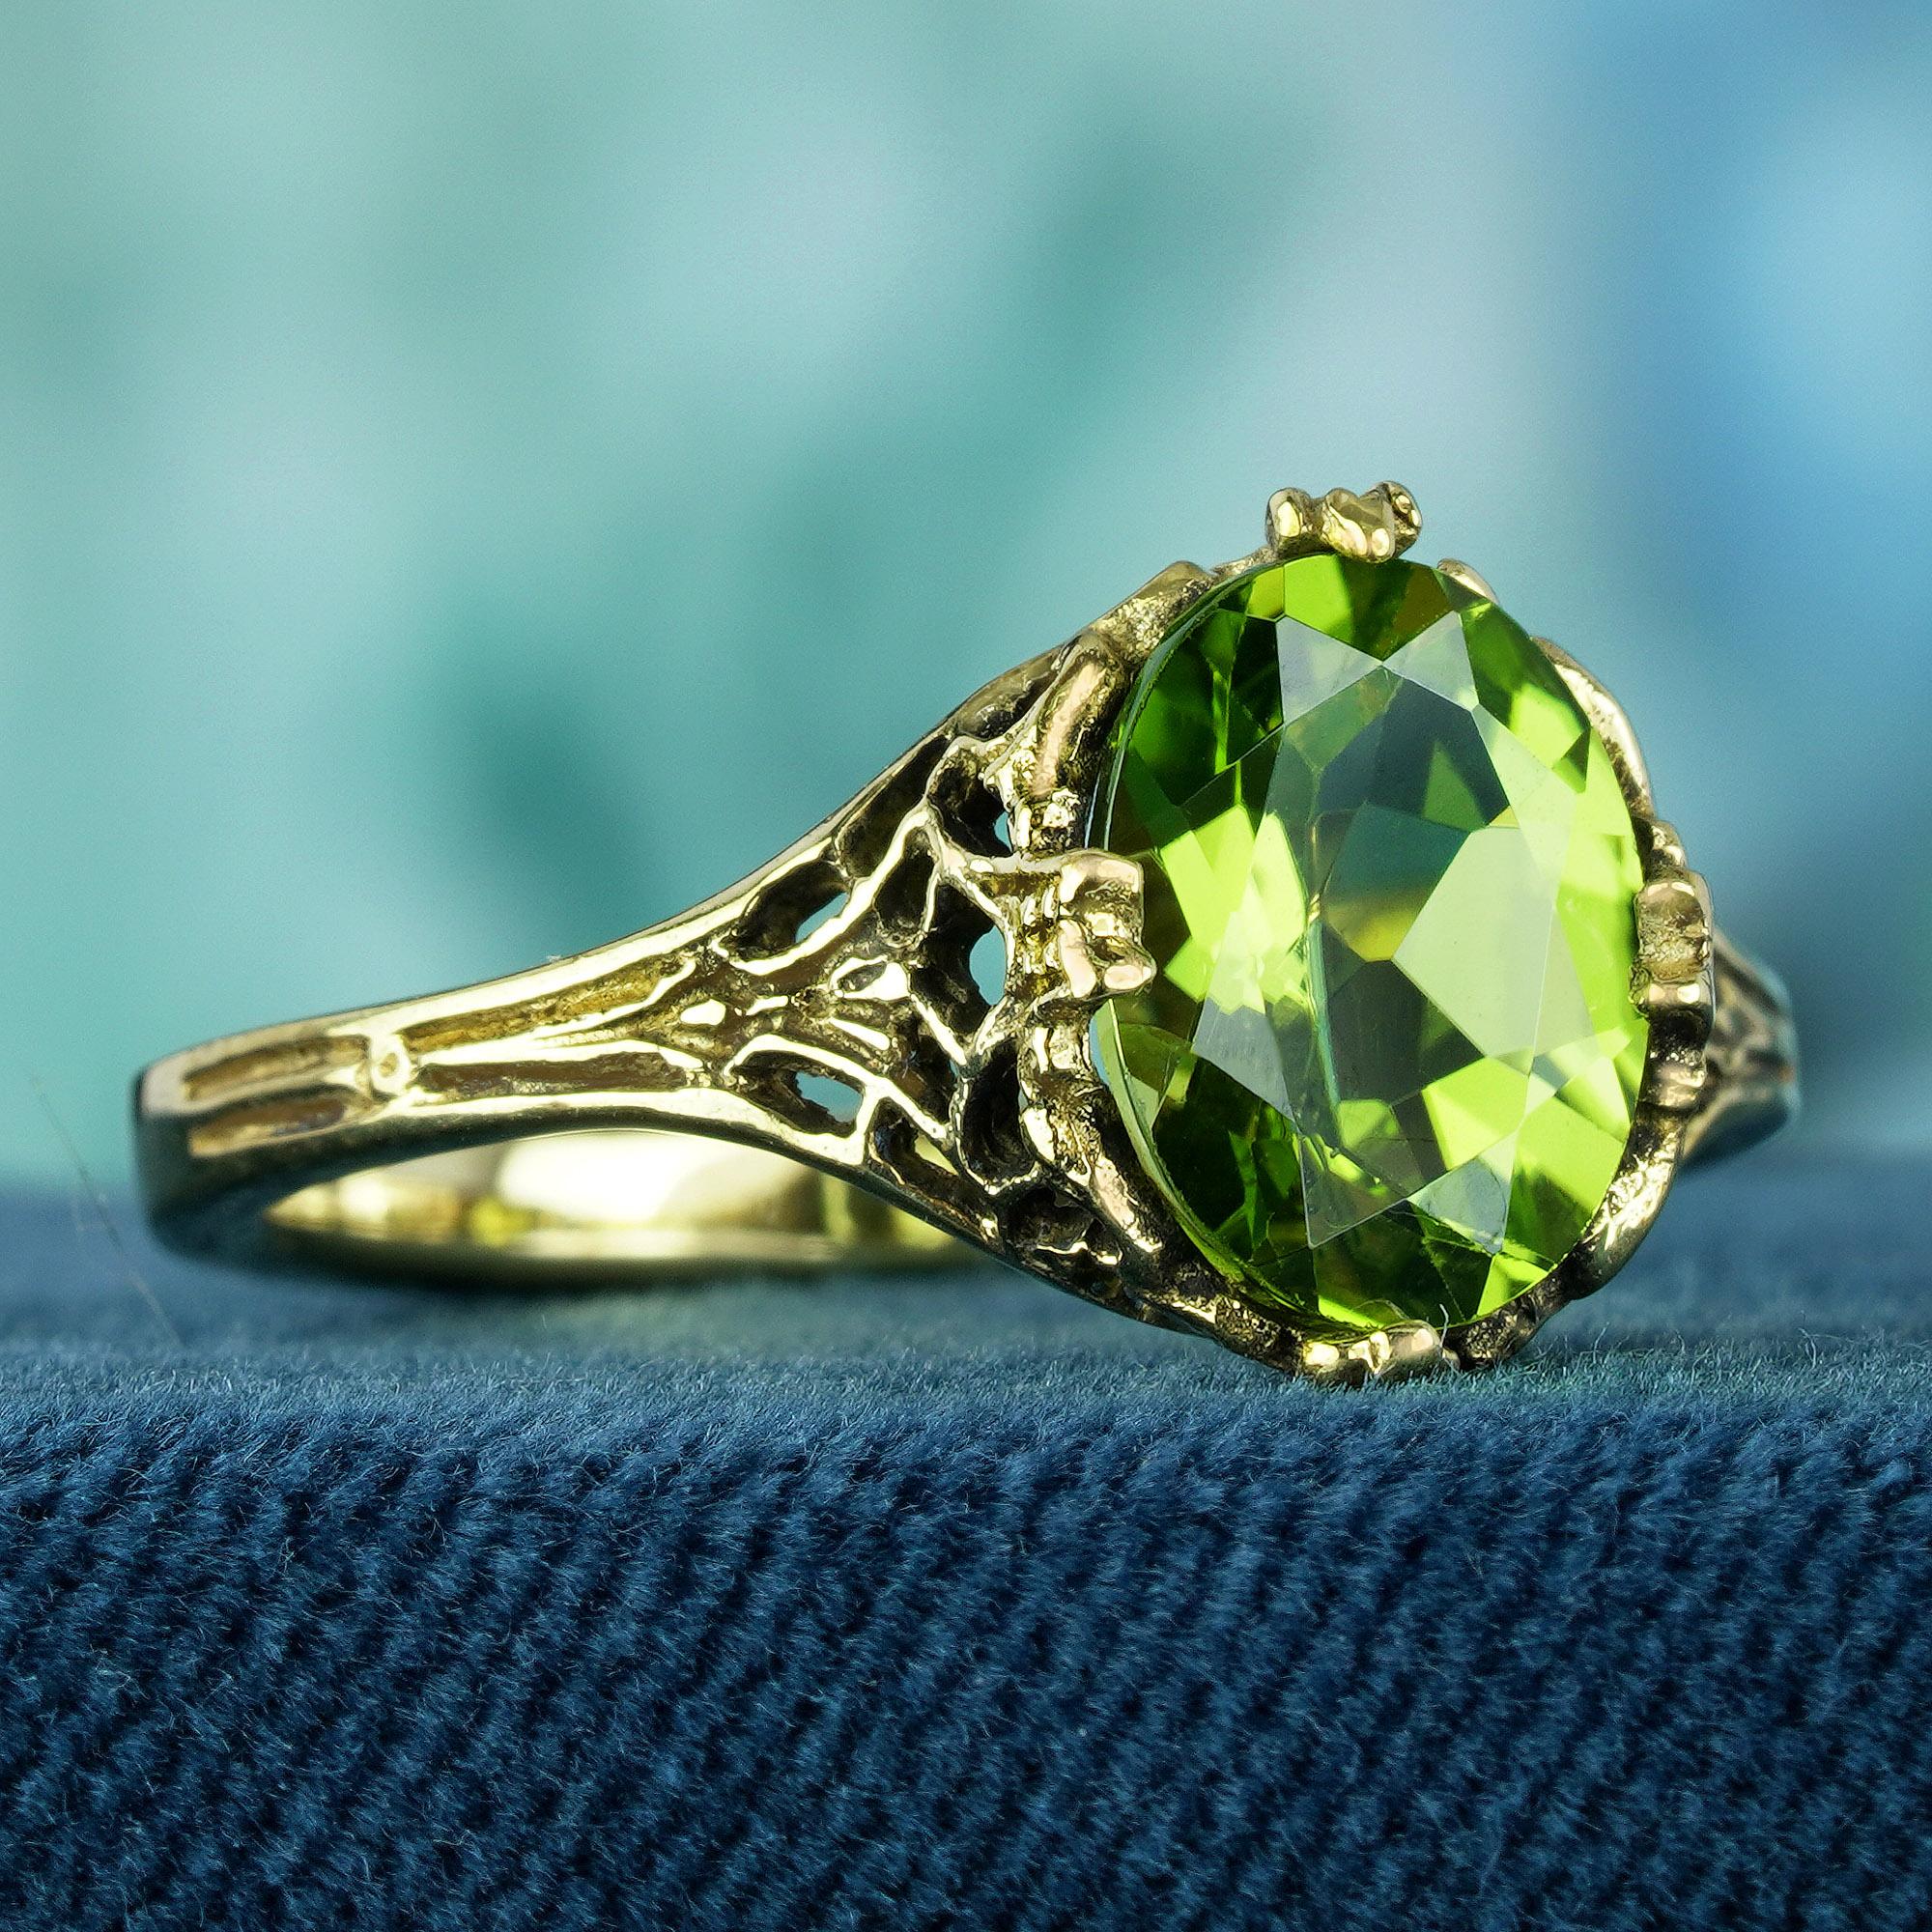 Réalisée en or jaune lumineux, cette bague présente un large anneau orné de filigranes complexes sur les épaules. La pièce maîtresse de la bague est une pierre précieuse ovale en péridot vert lime, rayonnant d'une beauté et d'un charme éclatants.